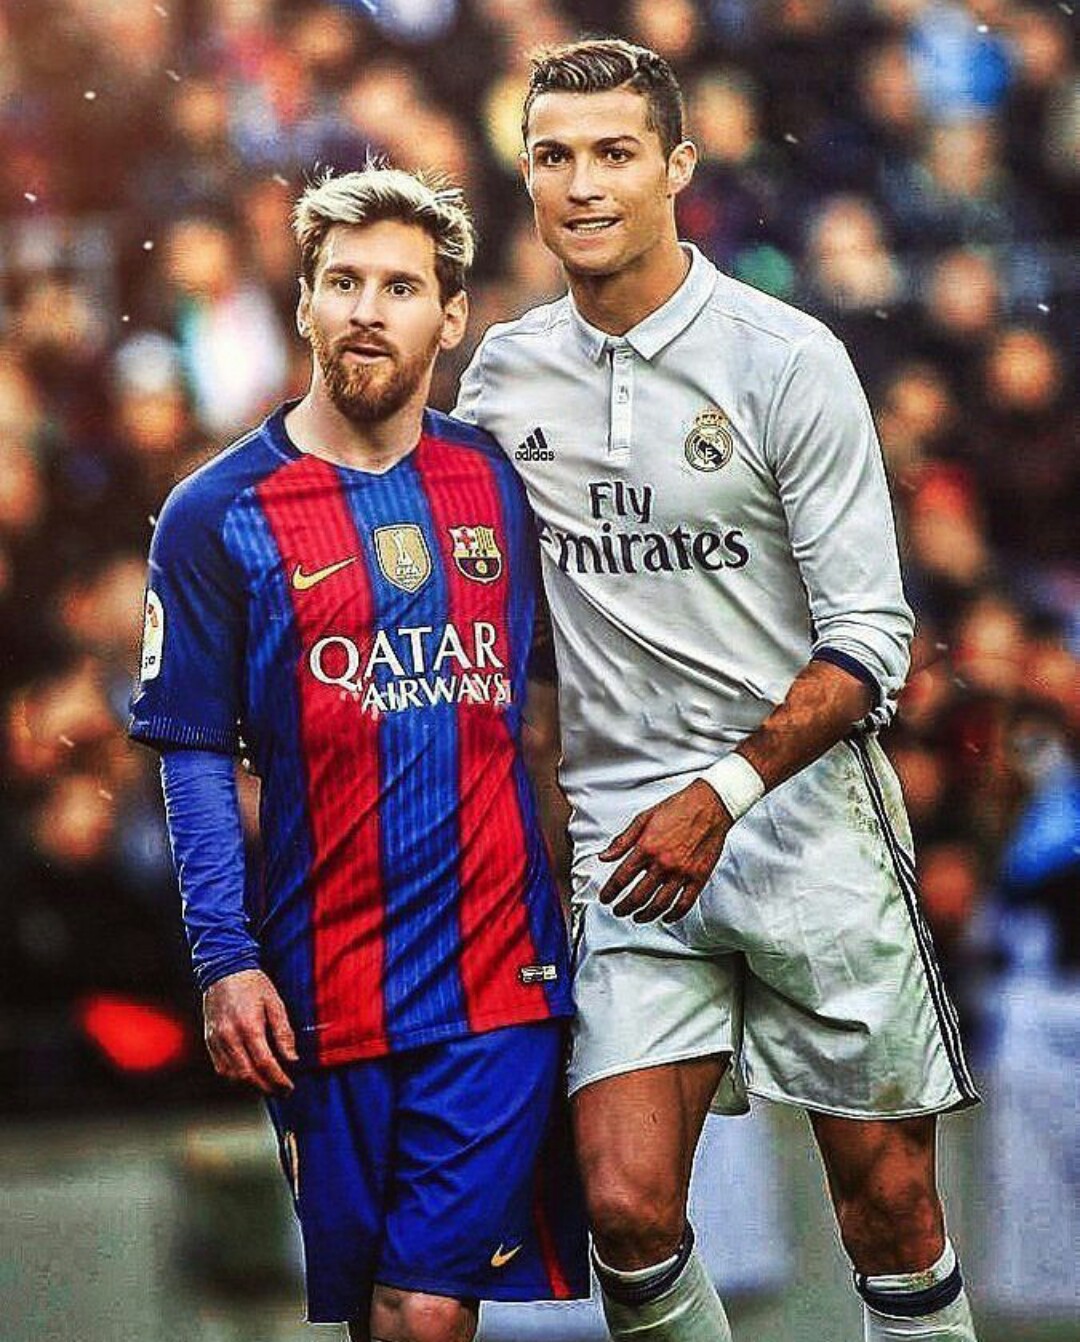 Có phải bạn đang tìm kiếm những hình ảnh của Messi và Ronaldo? Hãy xem ảnh này để cảm nhận sự tuyệt vời và đỉnh cao của cả hai cầu thủ đẳng cấp thế giới.